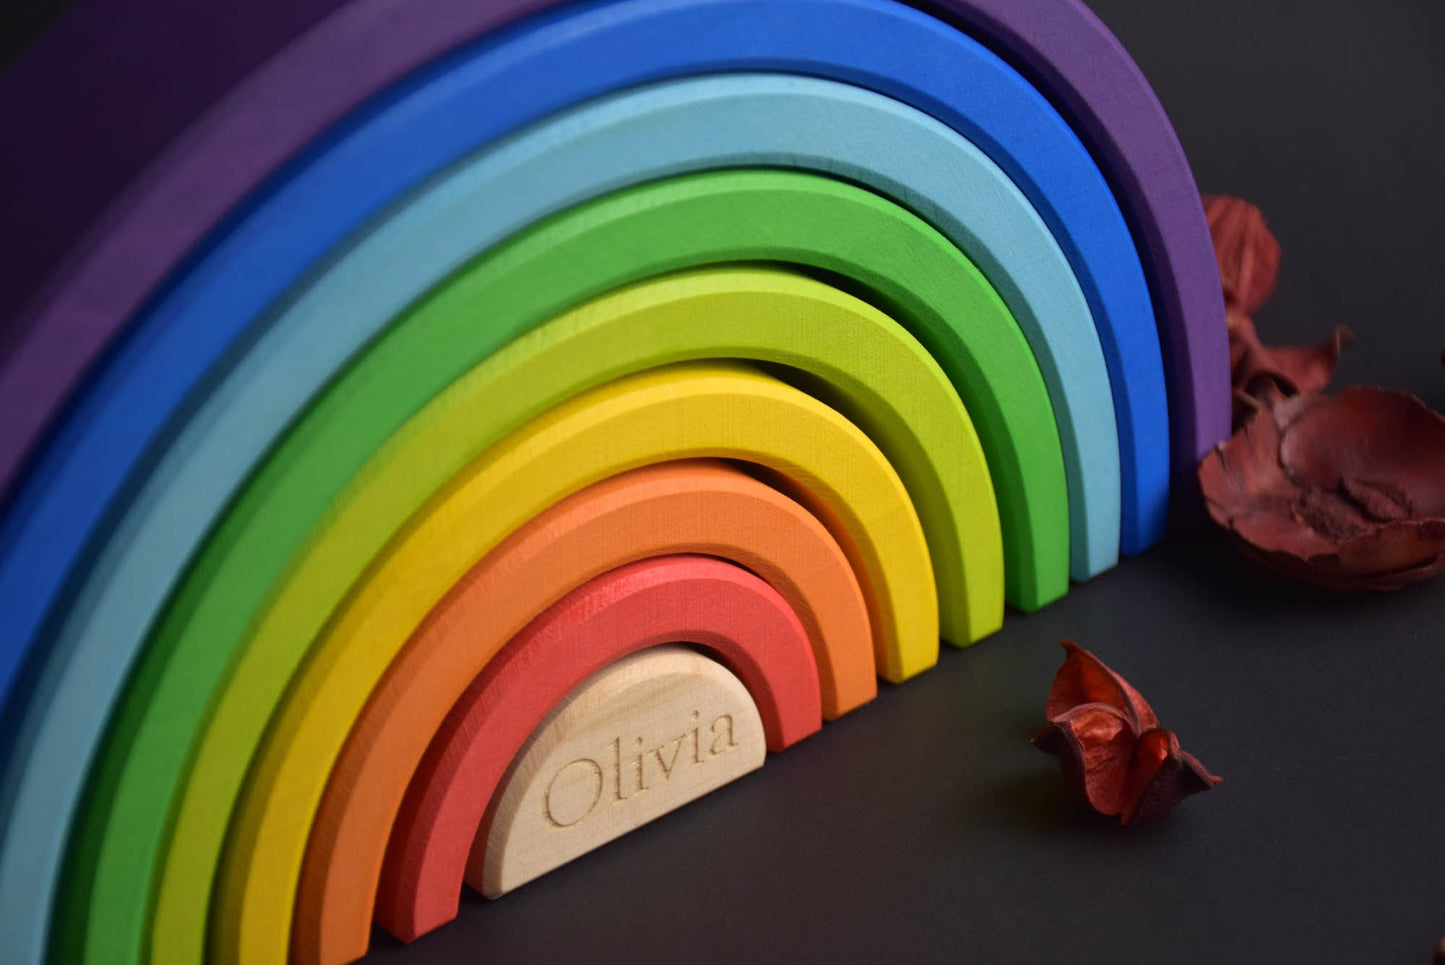 Baby Geschenk Stapelspielzeug Regenbogen groß 9-tlg.